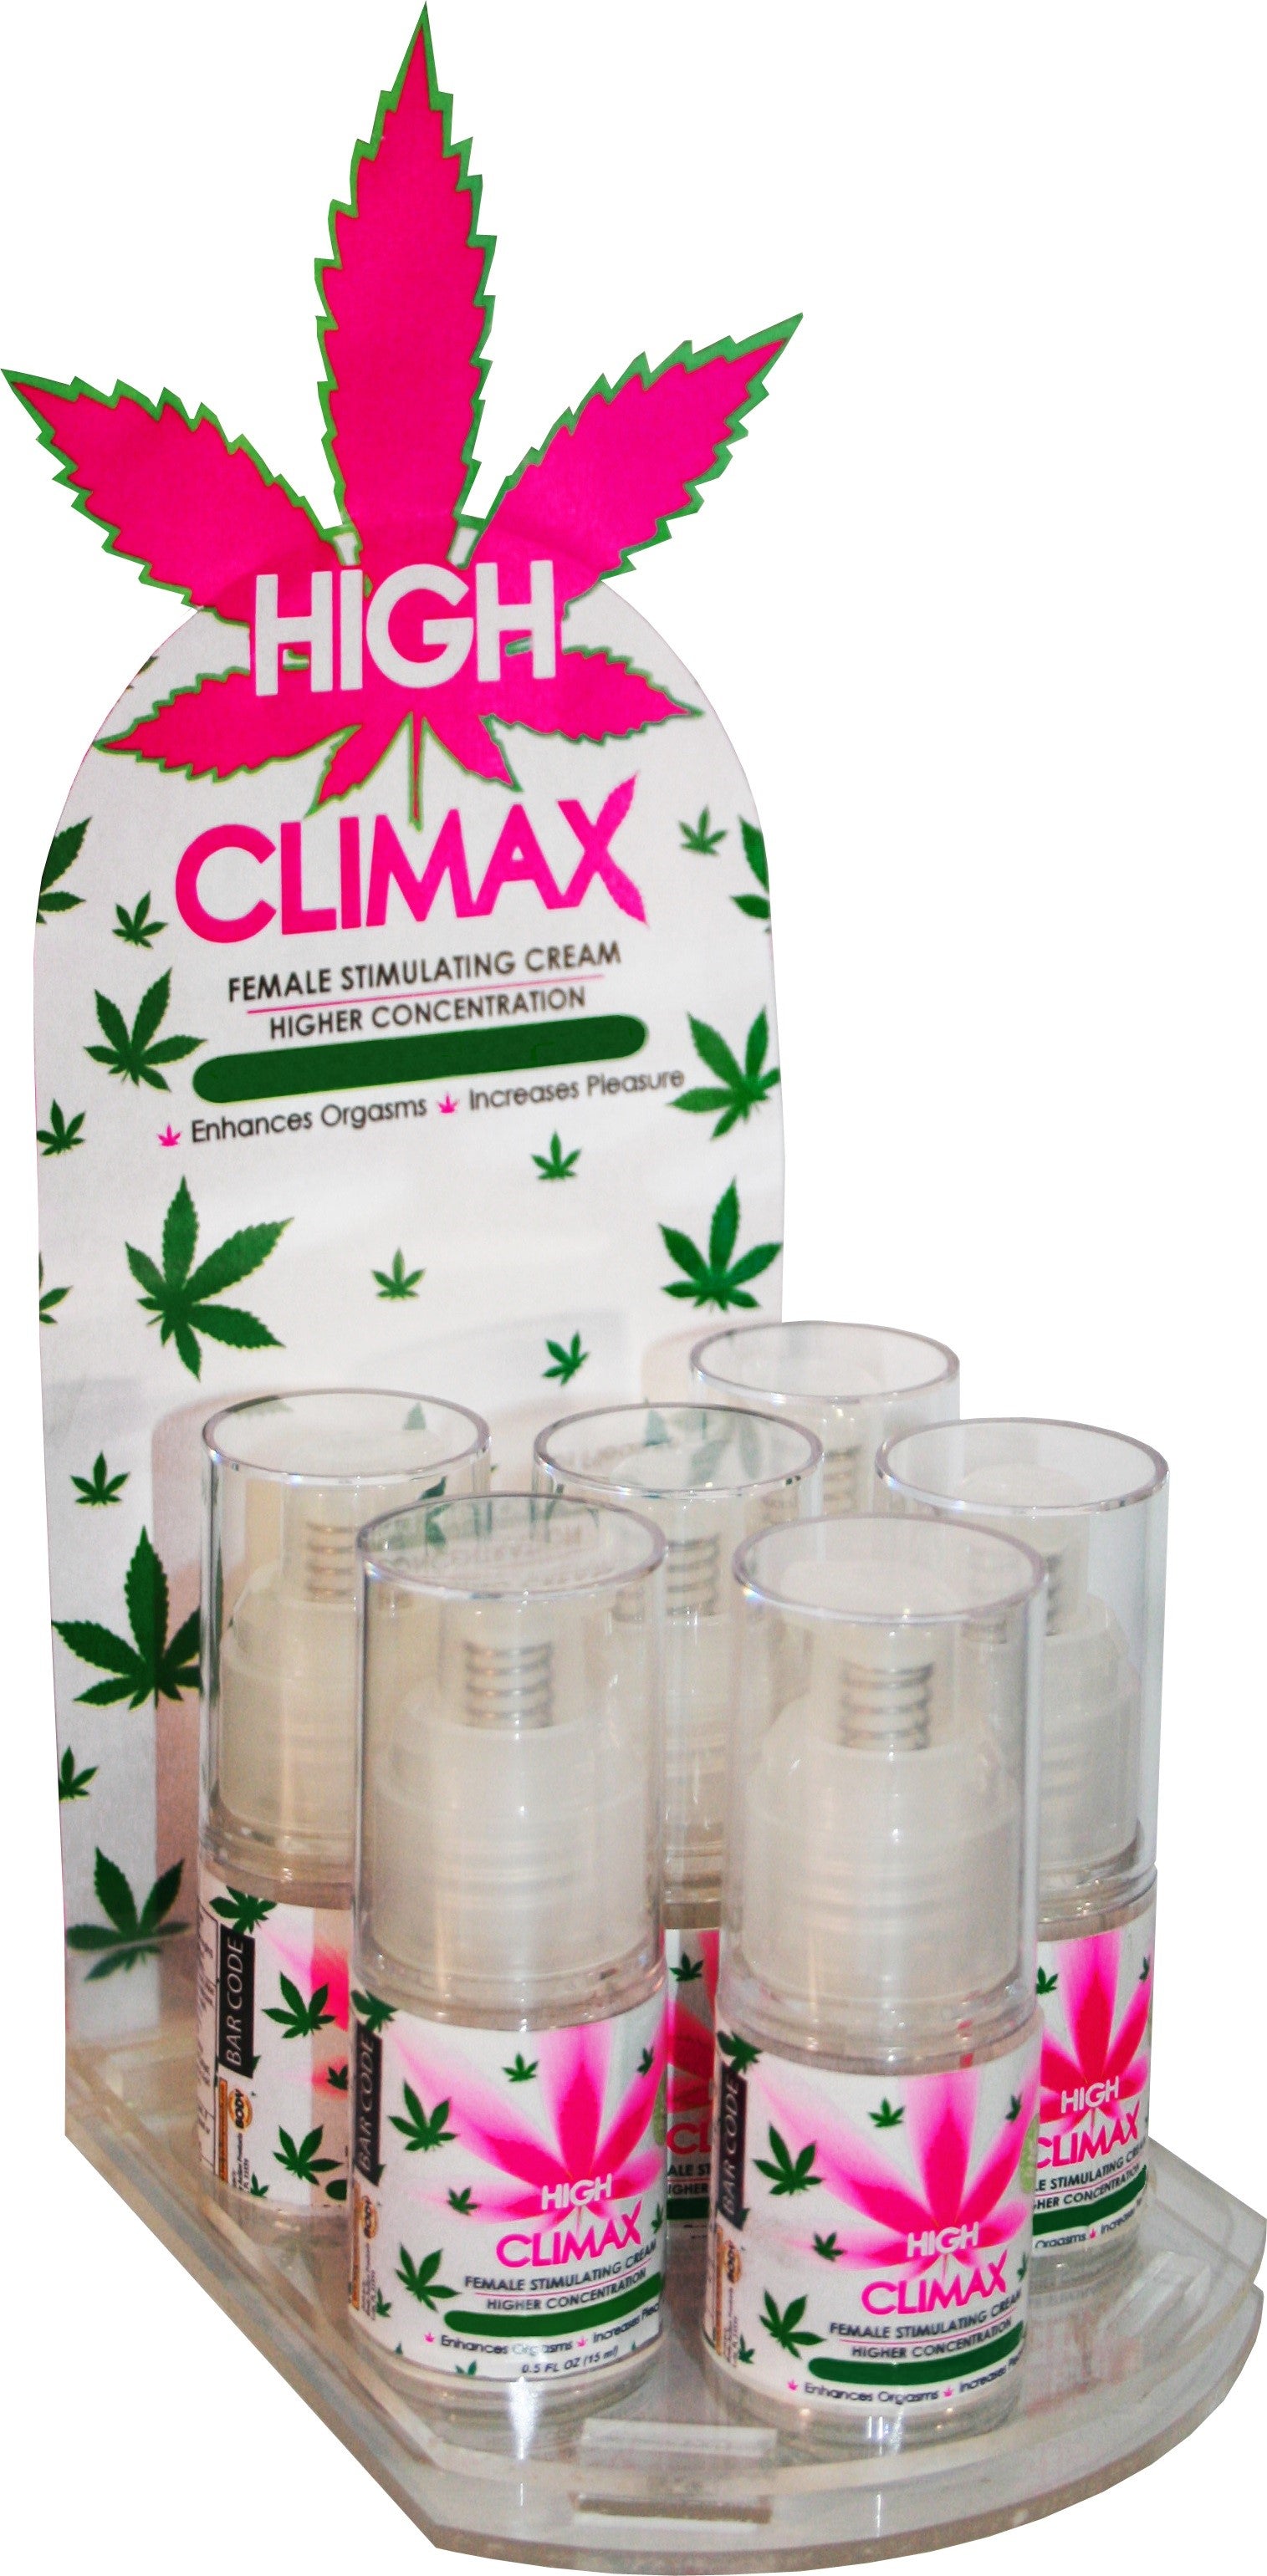 High Climax Female Stimulating Cream - 0.5 Fl. Oz. / 15 ml - 6 Count Display BA-6HCCD